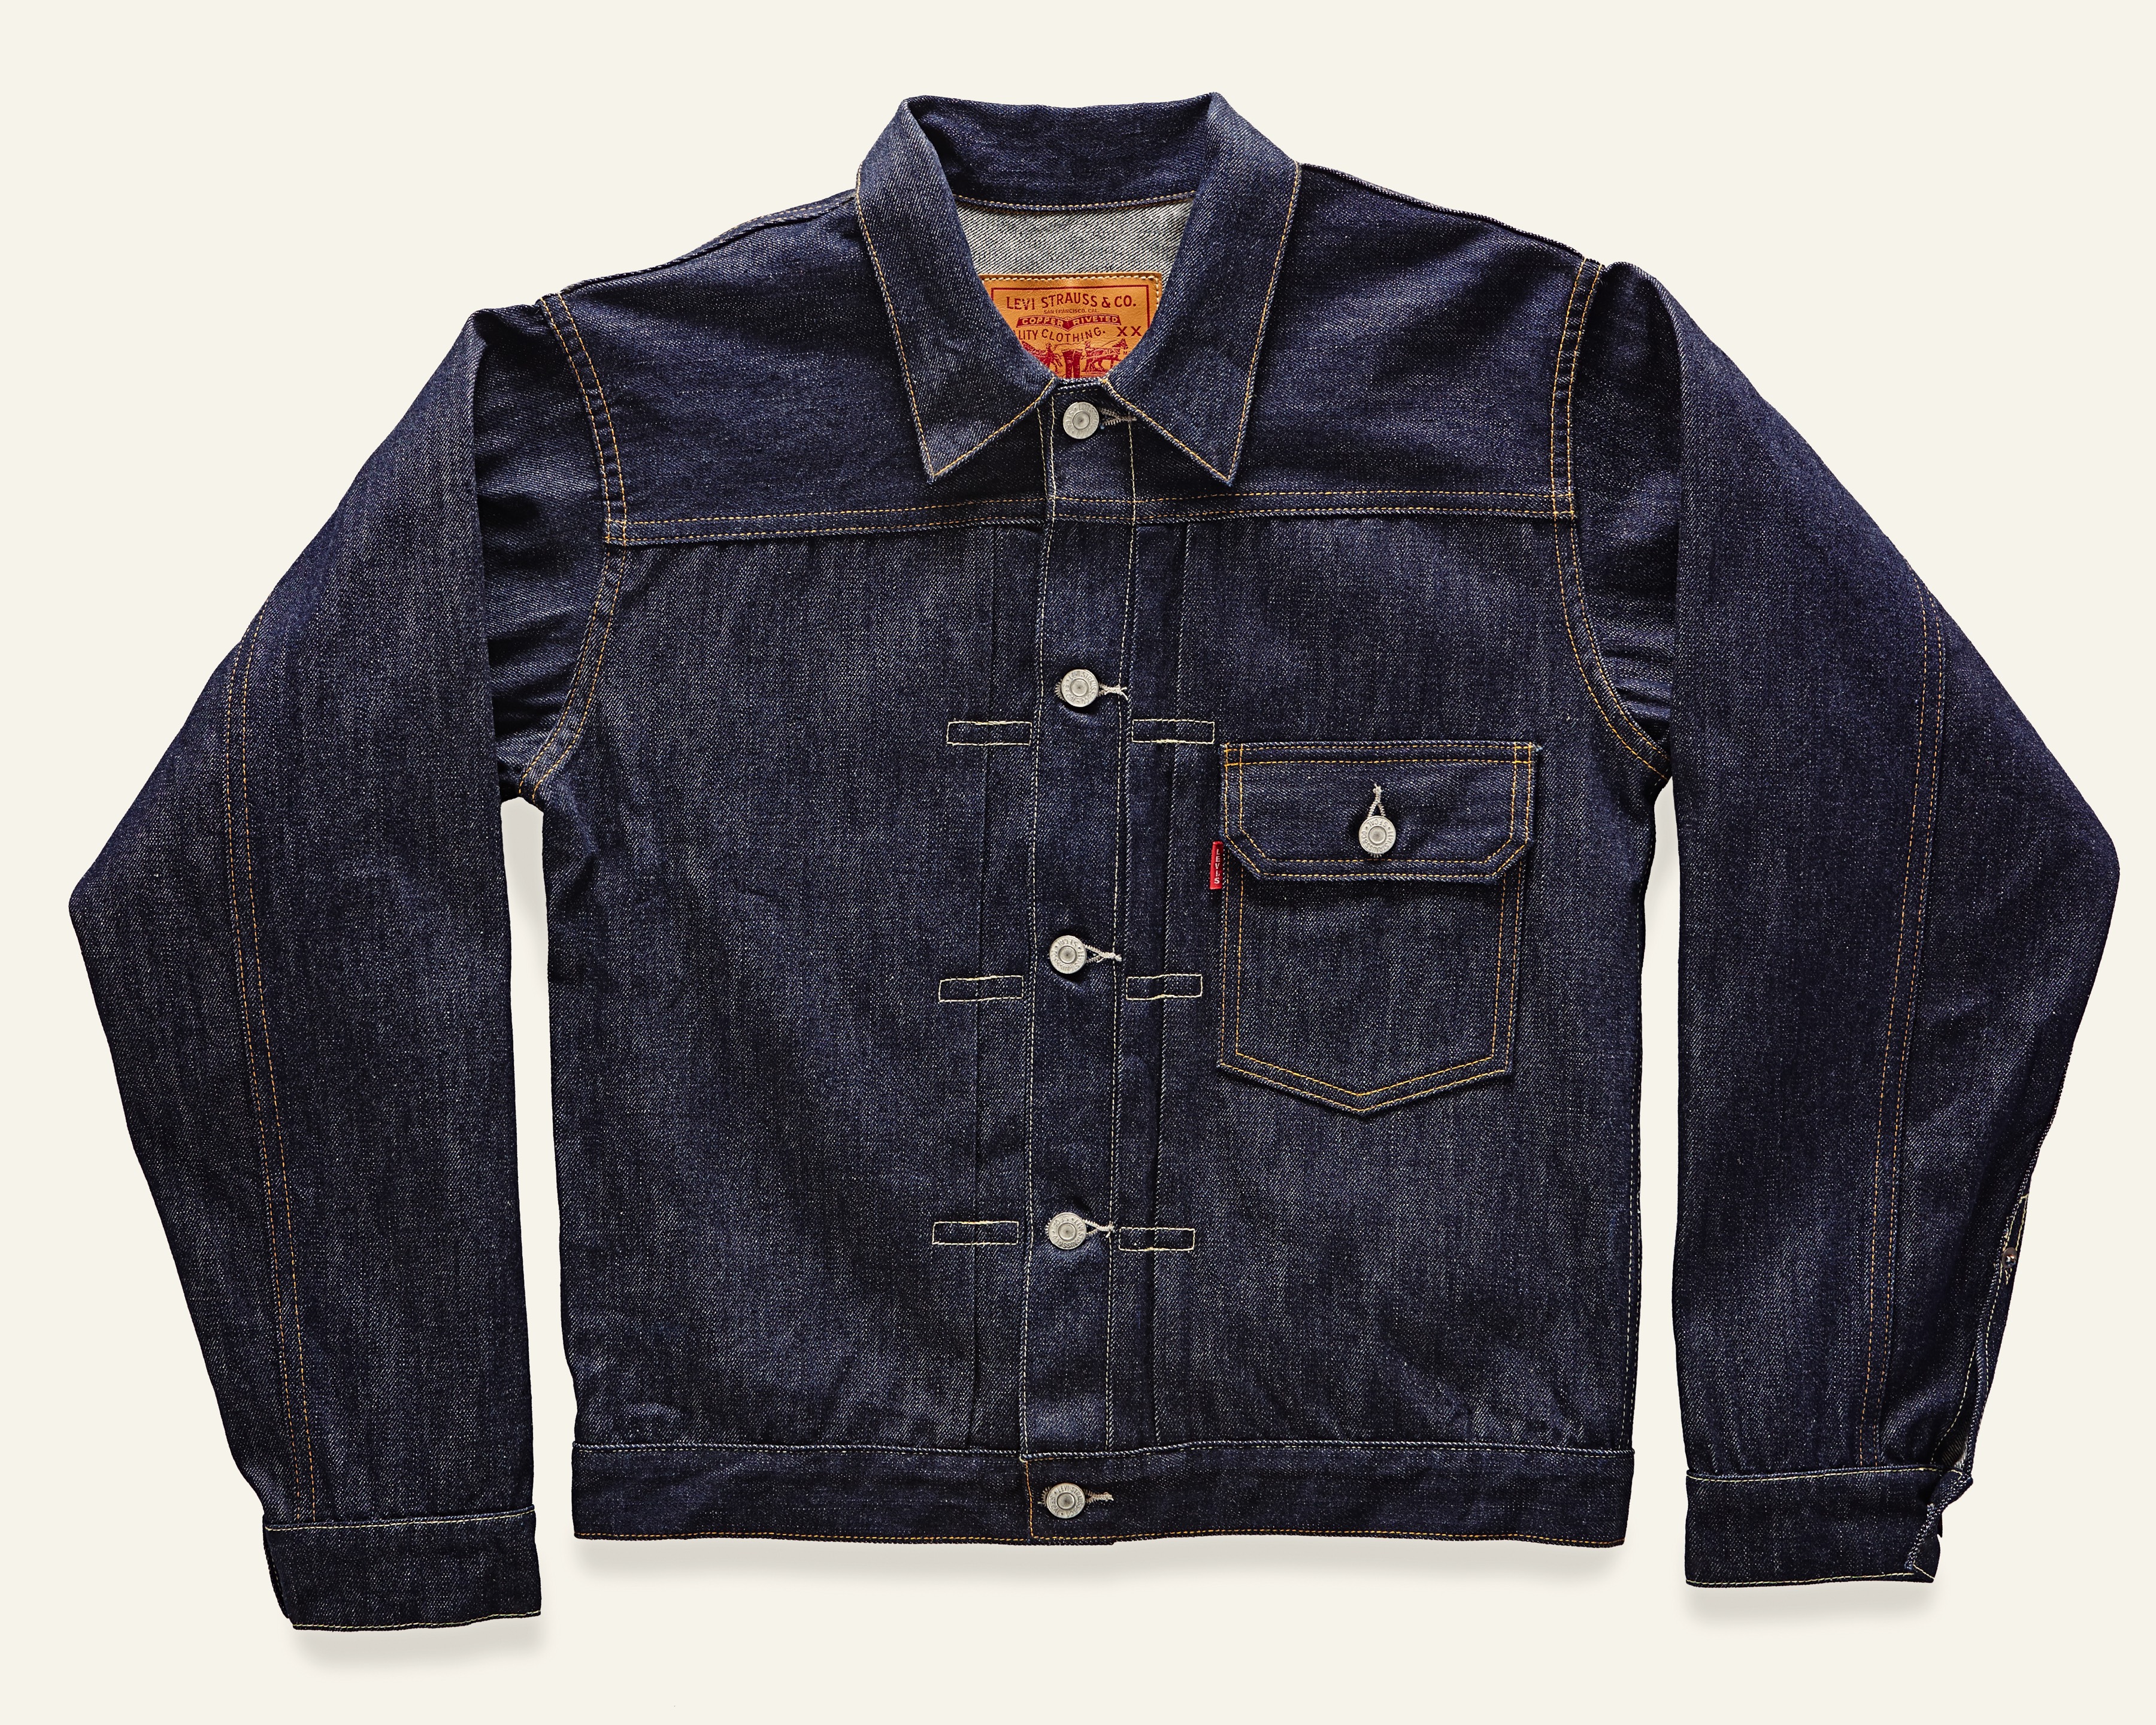 Levis Vintage Clothing 1936 Type I Jacket - Dark Indigo Blue I Article.